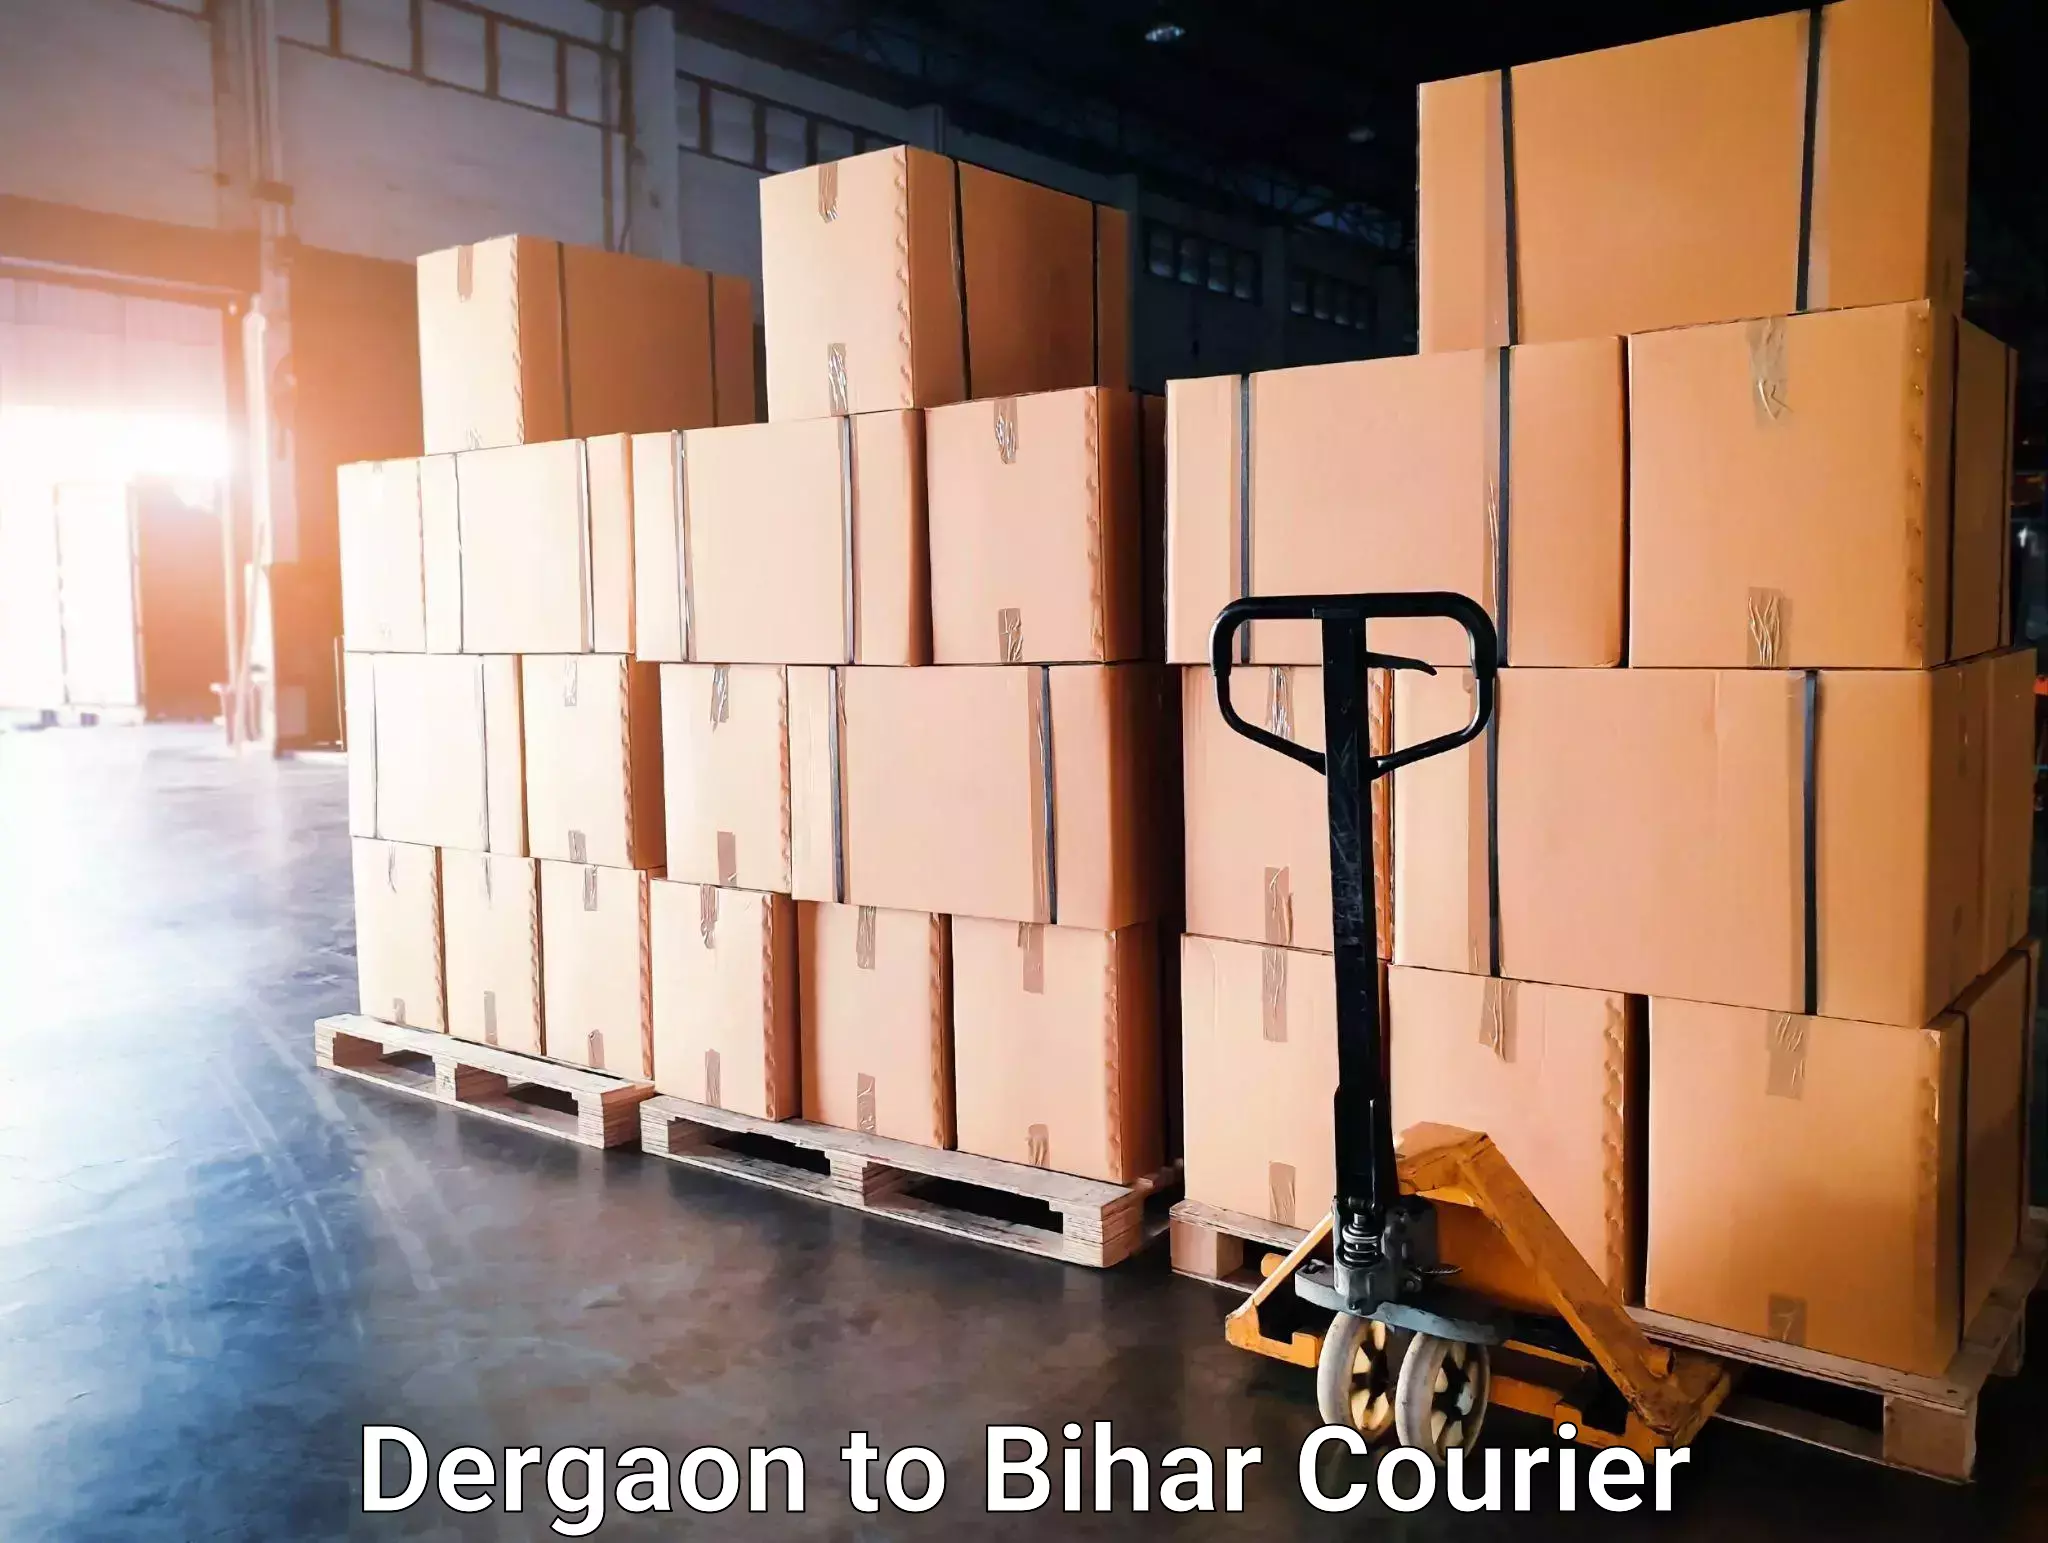 Express delivery capabilities Dergaon to Mahnar Bazar